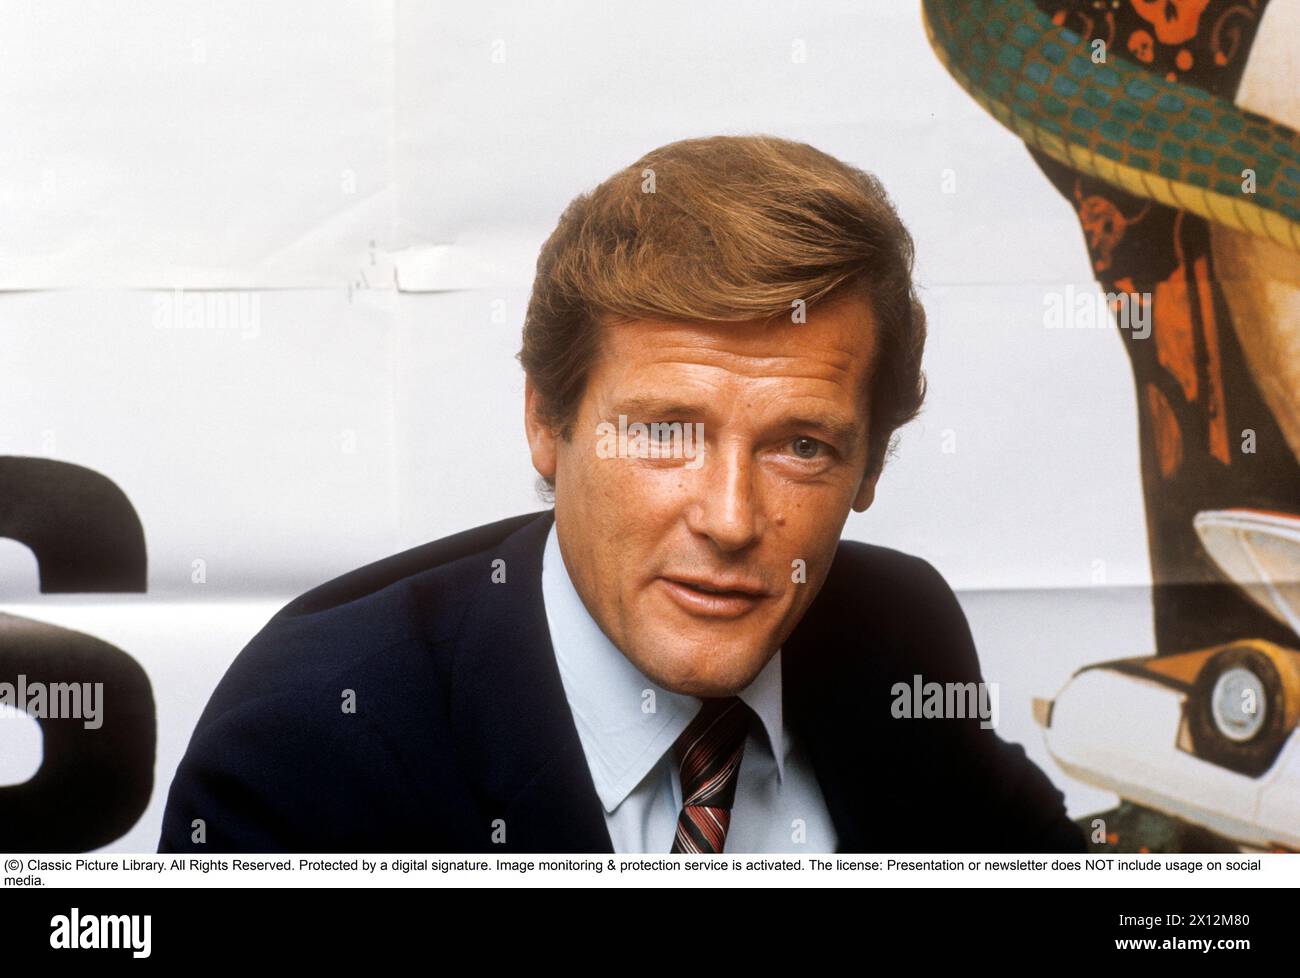 Sir Roger Moore , 1927-2017 lors d'un événement médiatique en lien avec la première suédoise du long métrage Live and let die. Roger Moore est connu pour son rôle d'agent James Bond, jouant le personnage dans sept longs métrages. Octobre 1973 Banque D'Images